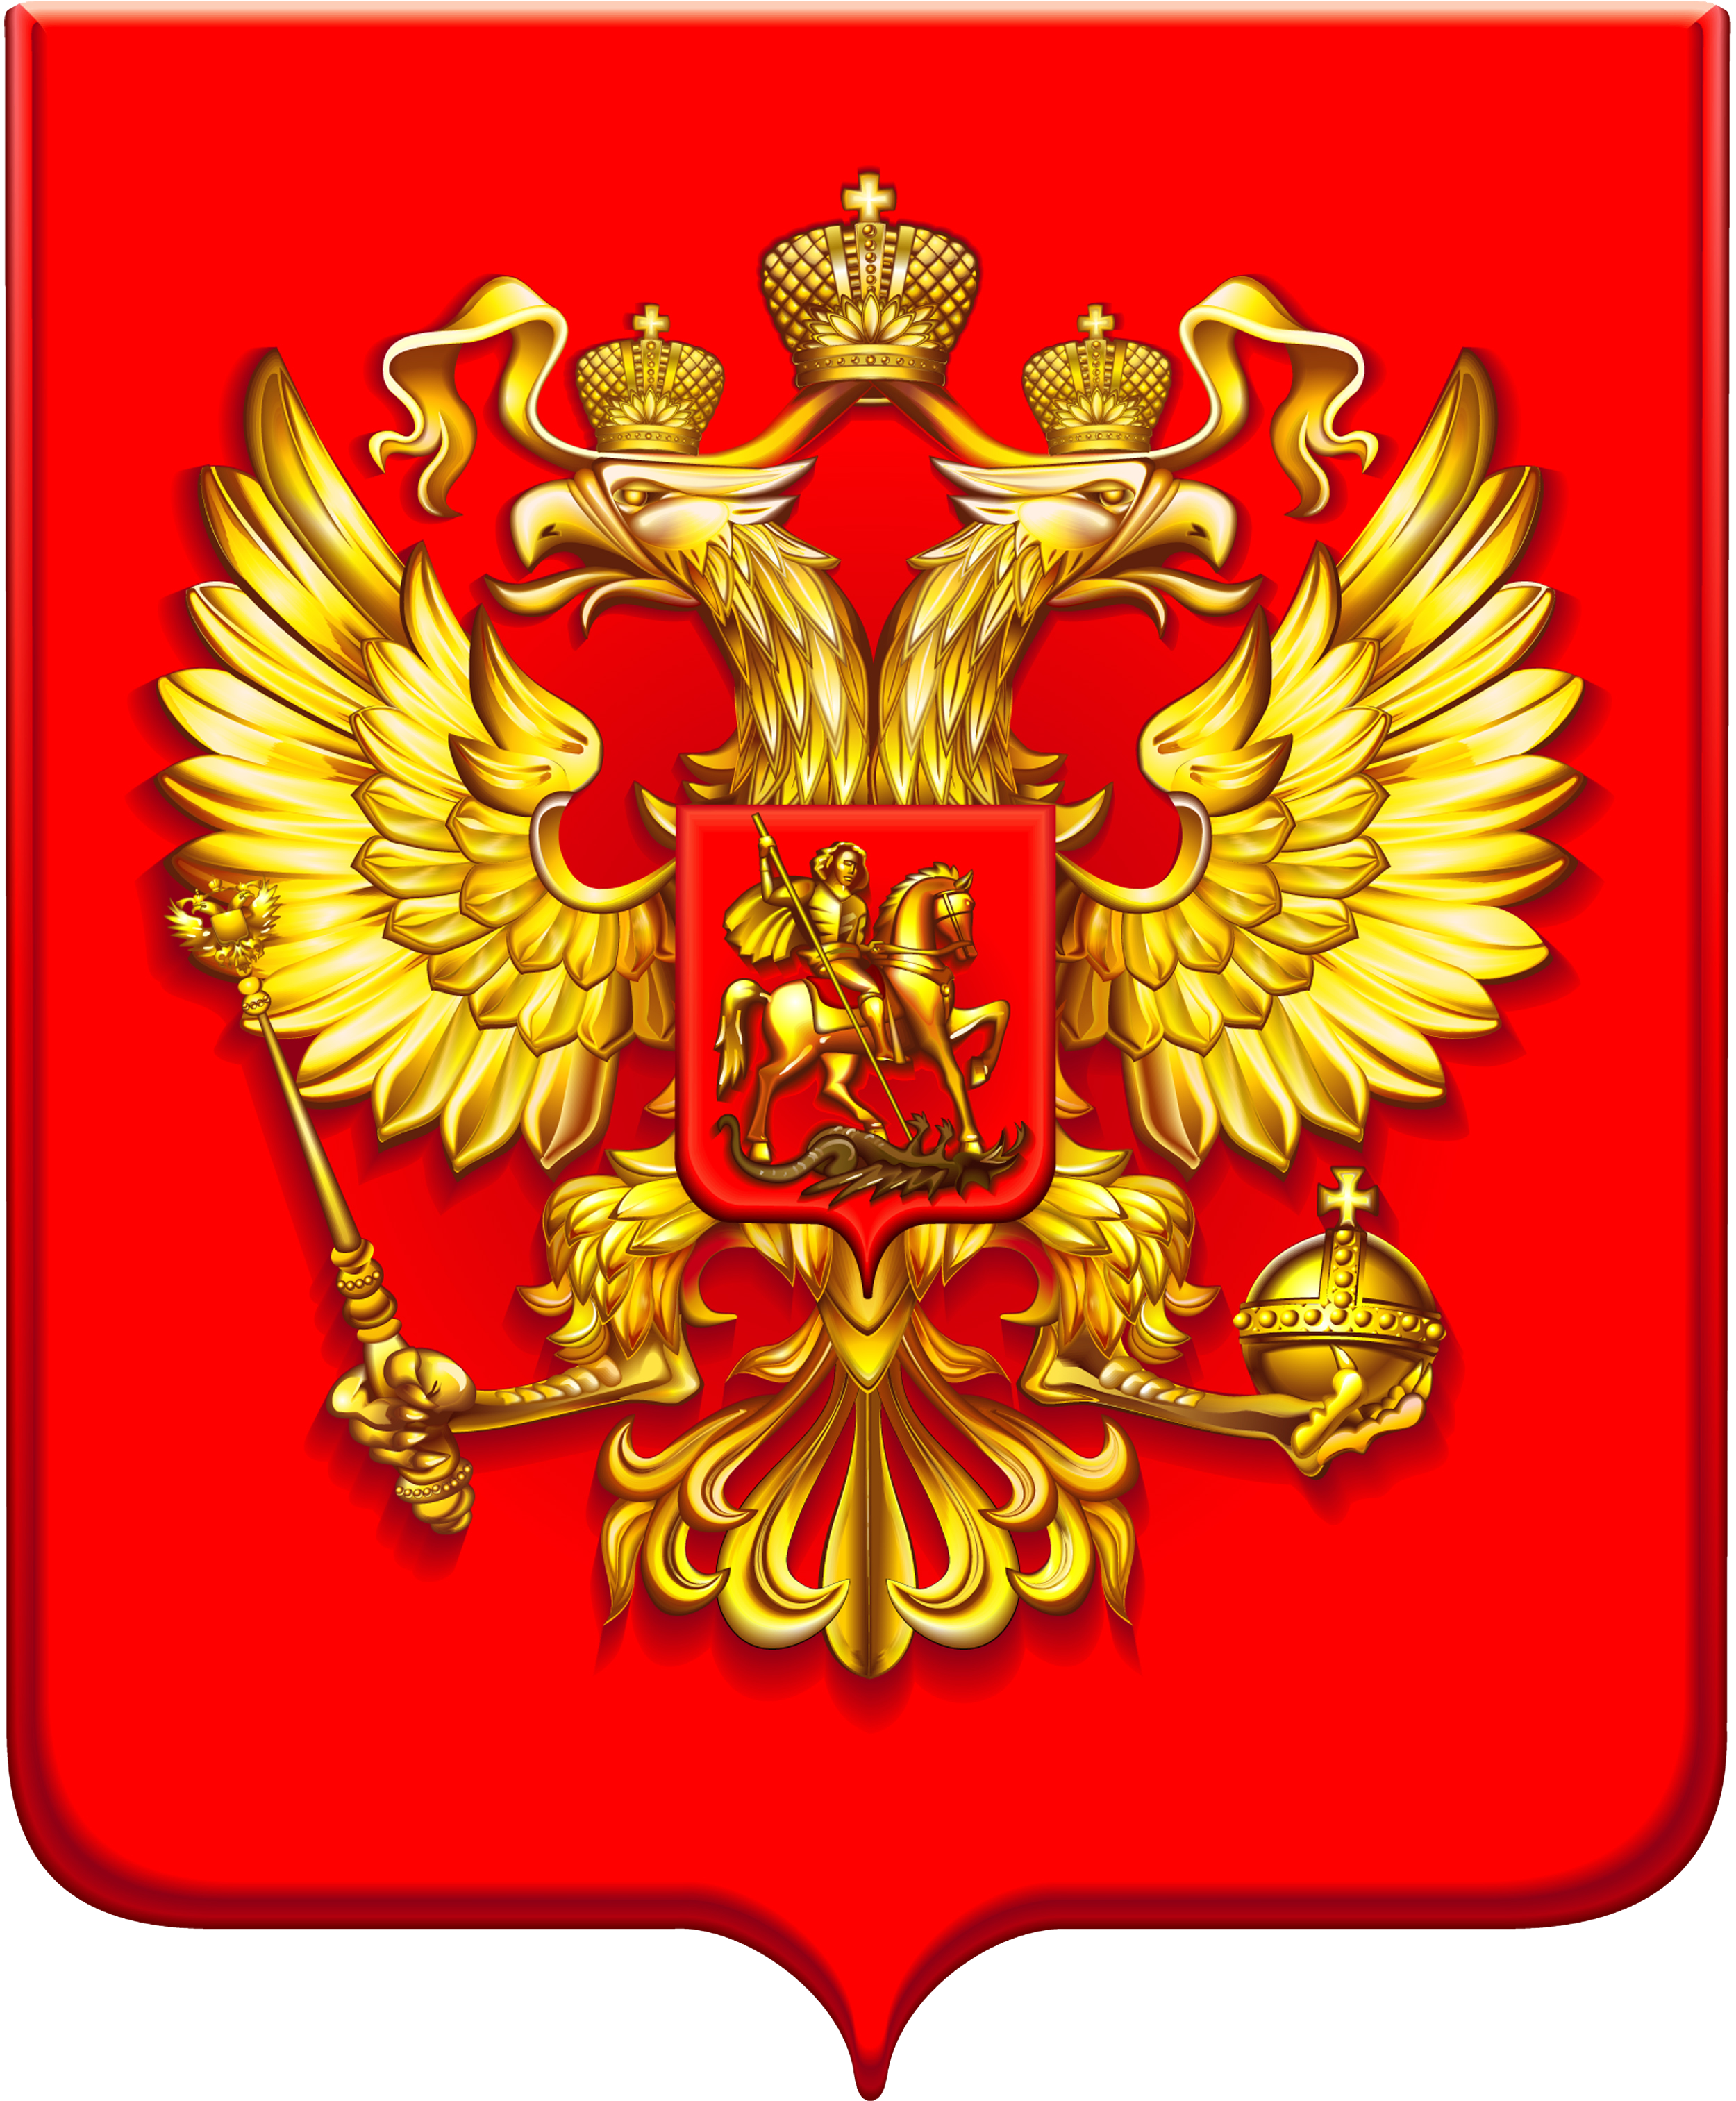 Сегодня исполняется 30 лет со дня утверждения Государственного герба Российской Федерации